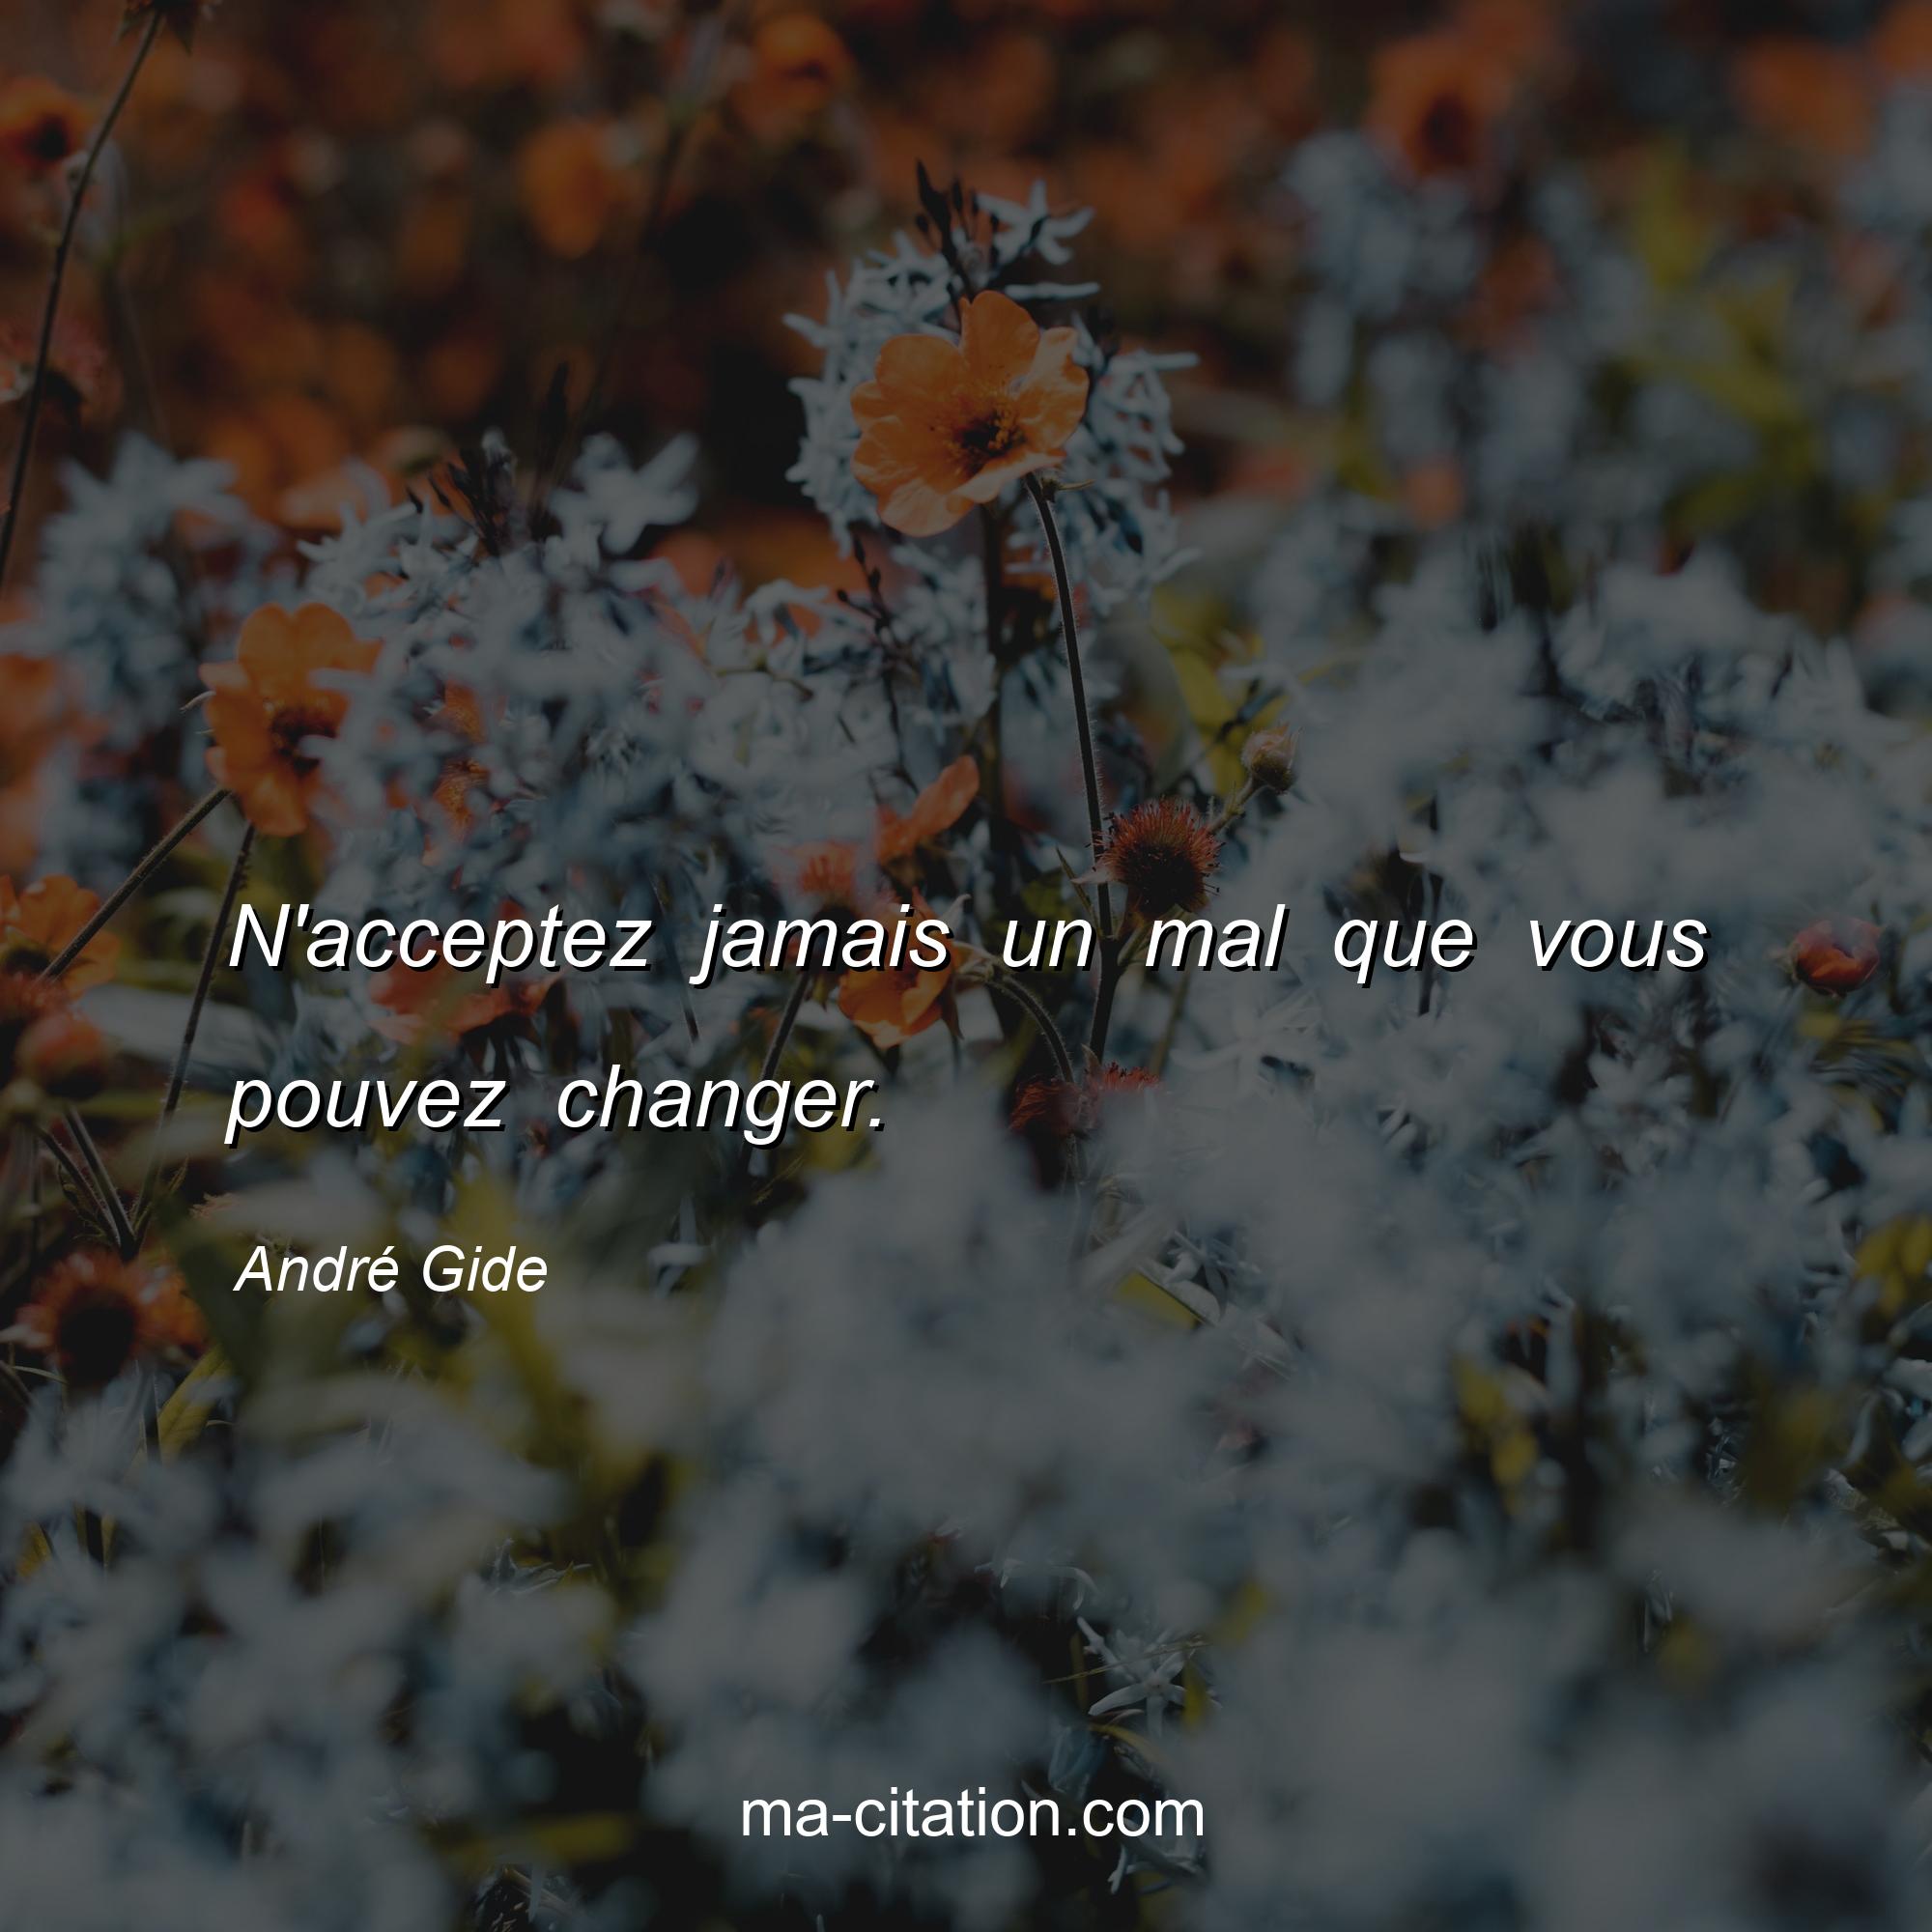 André Gide : N'acceptez jamais un mal que vous pouvez changer.